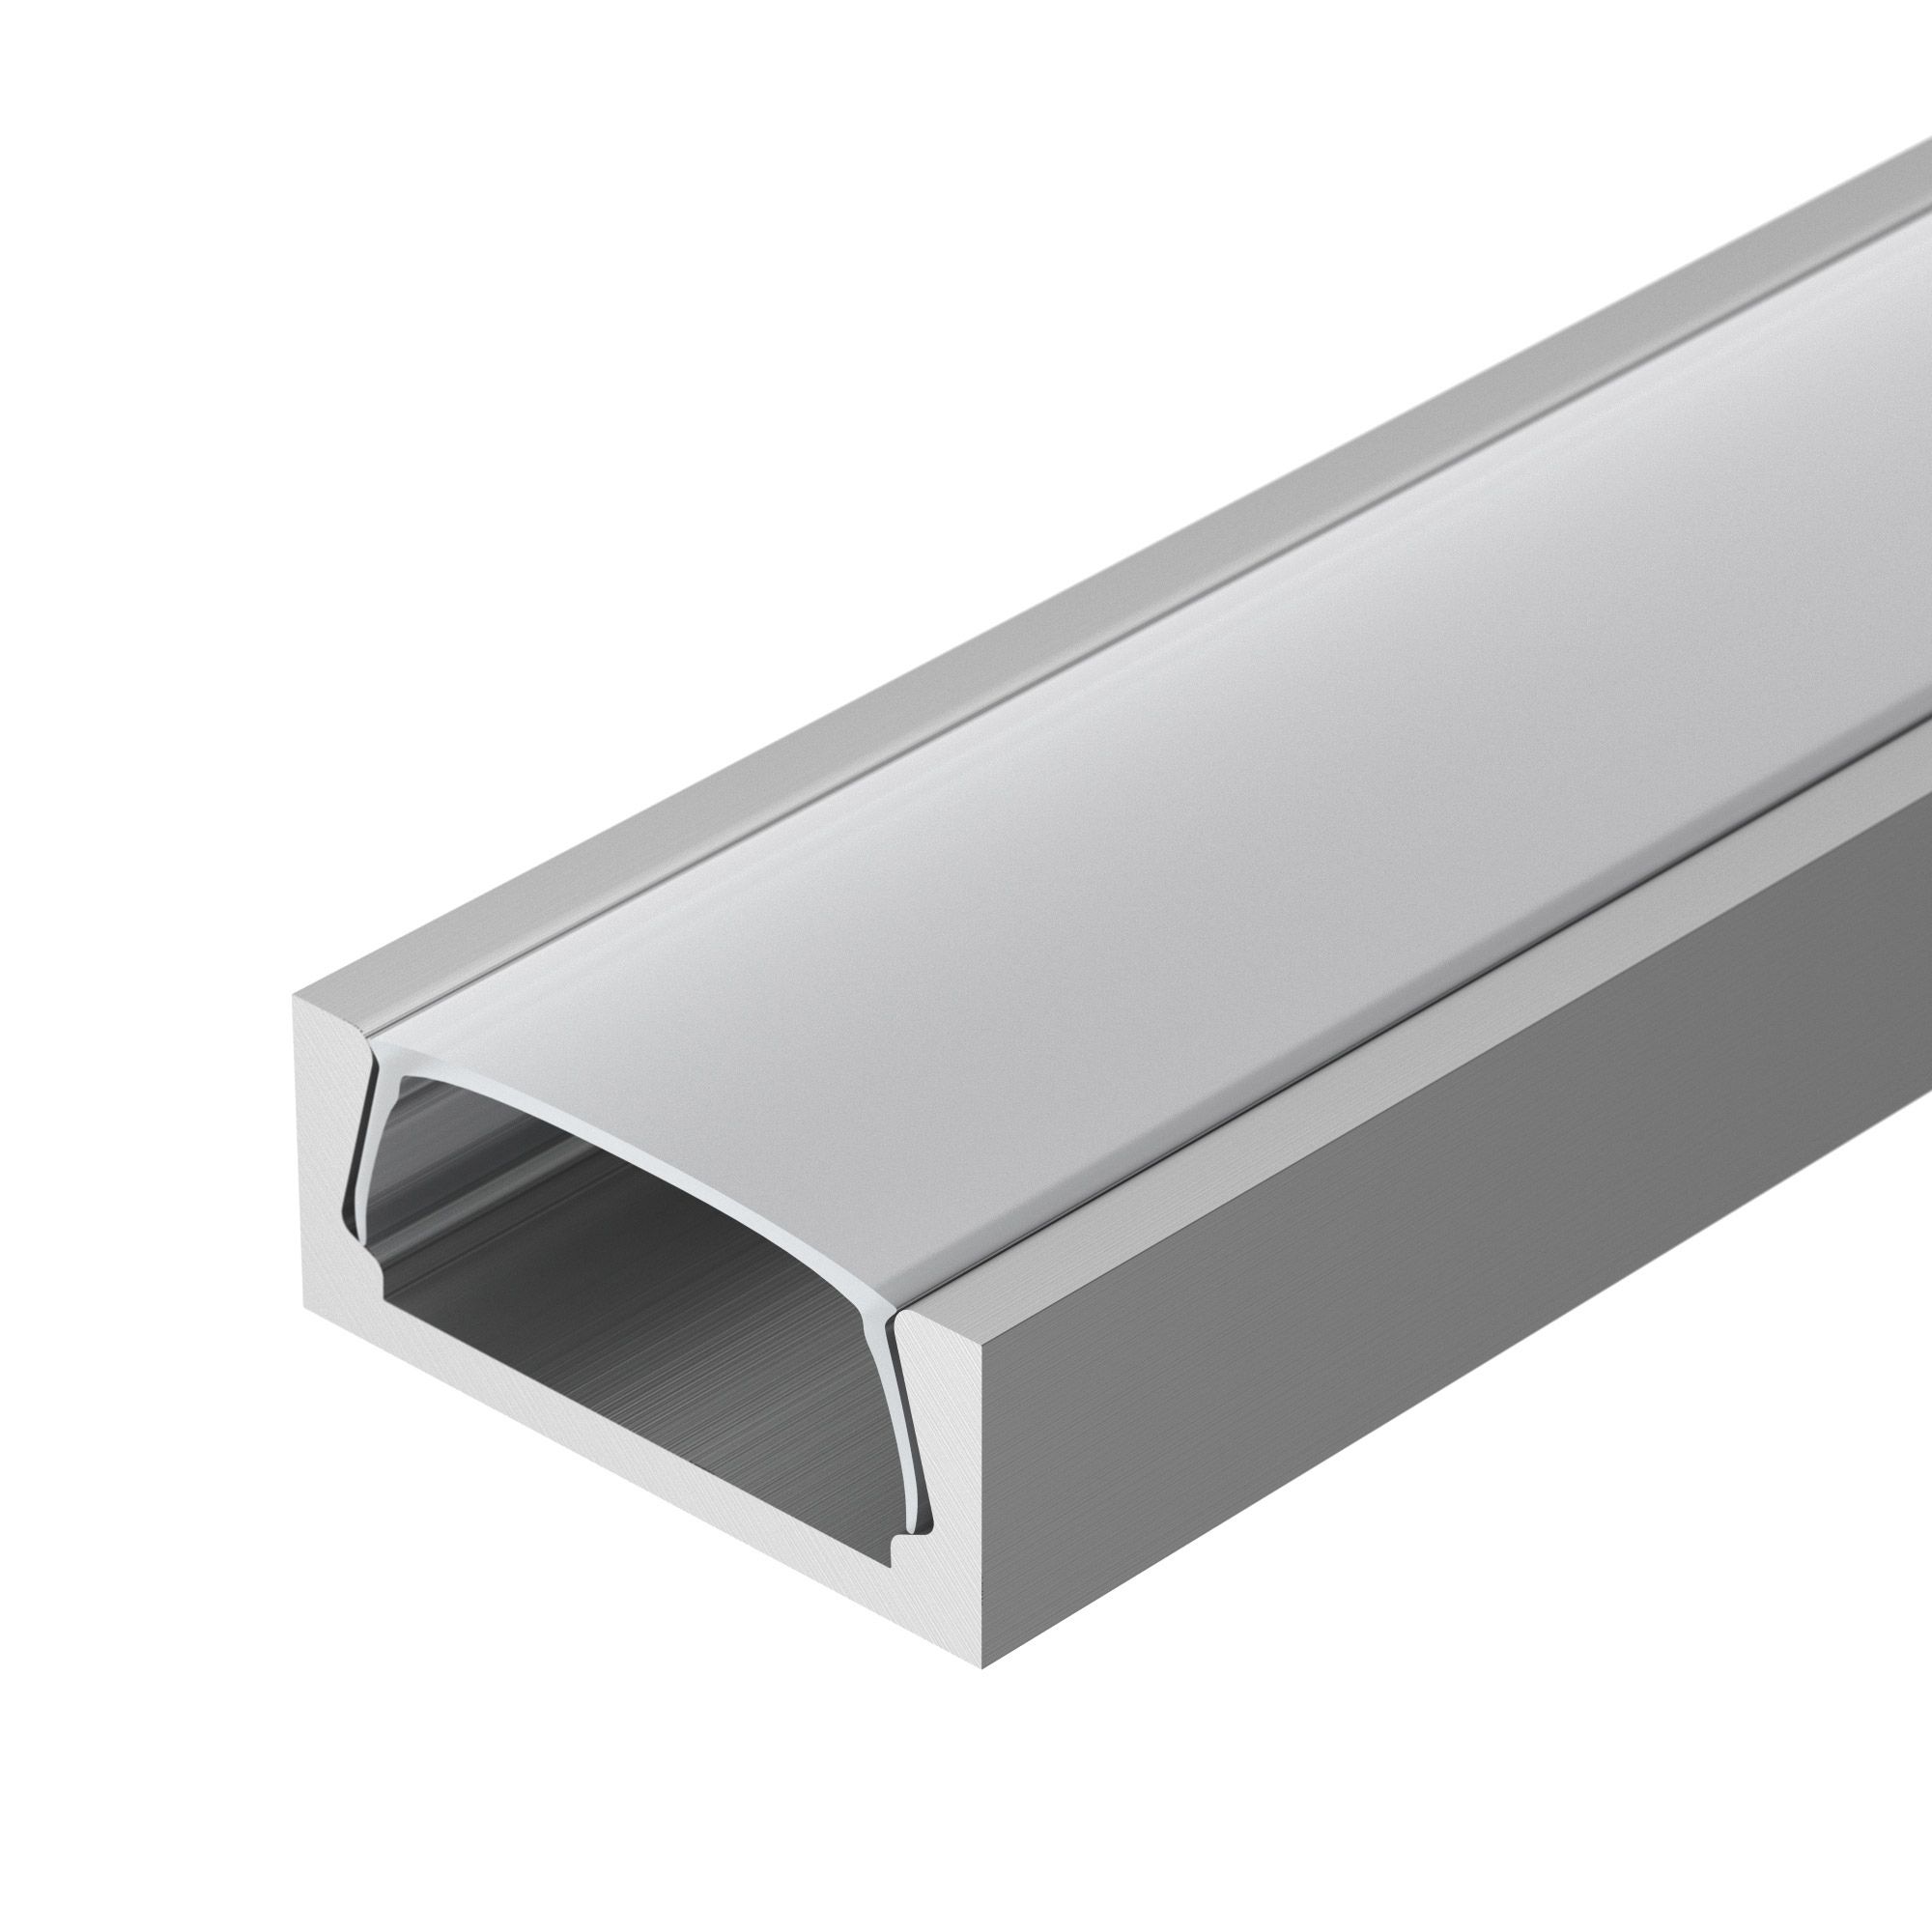 Профиль MIC-3000 (Arlight, Алюминий) l профиль с равными сторонами 15x15x1x2700 мм алюминий серебро